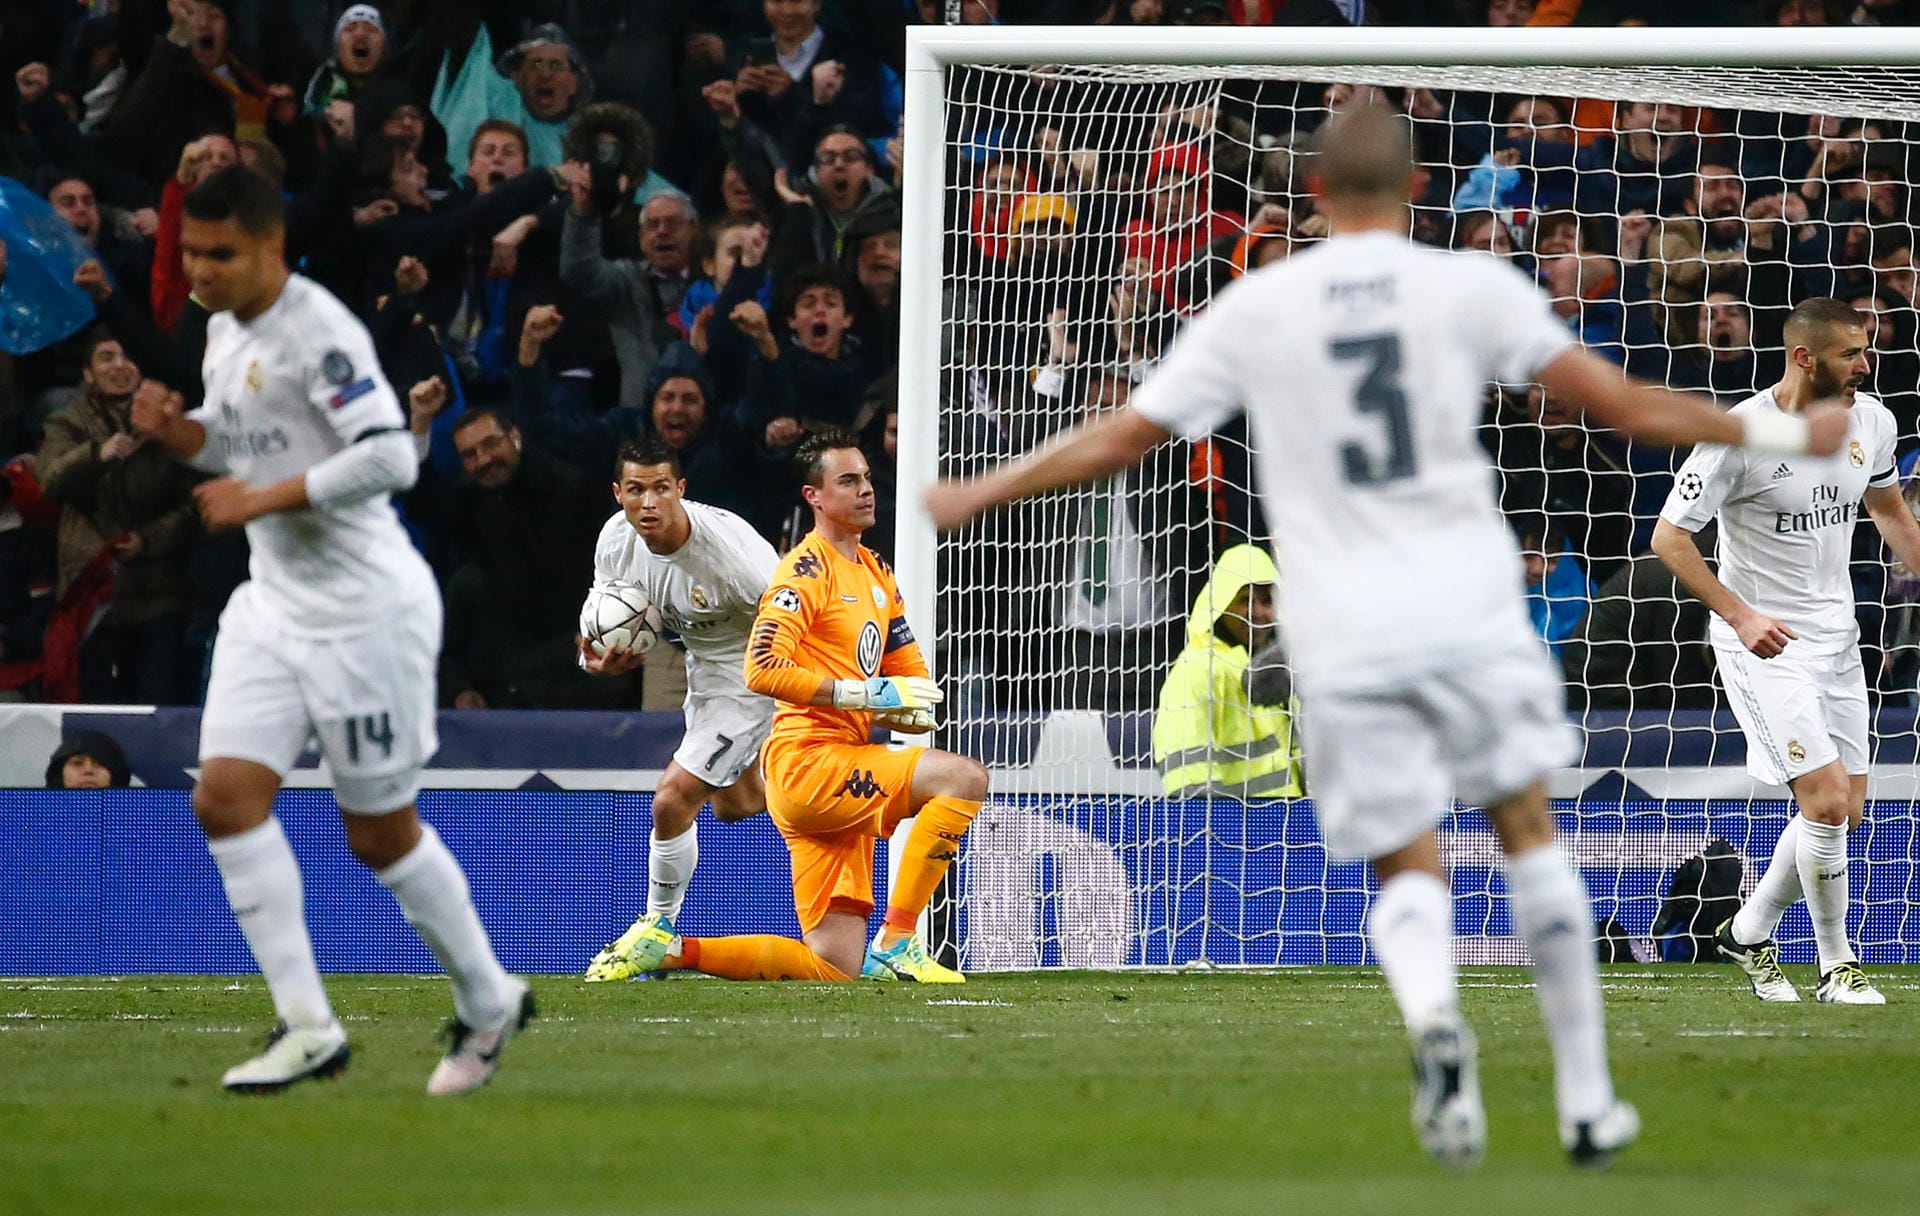 Schnell den Ball schnappen und weiter geht es: Cristiano Ronaldo trifft schon nach wenigen Minuten zum 1:0 für Real.